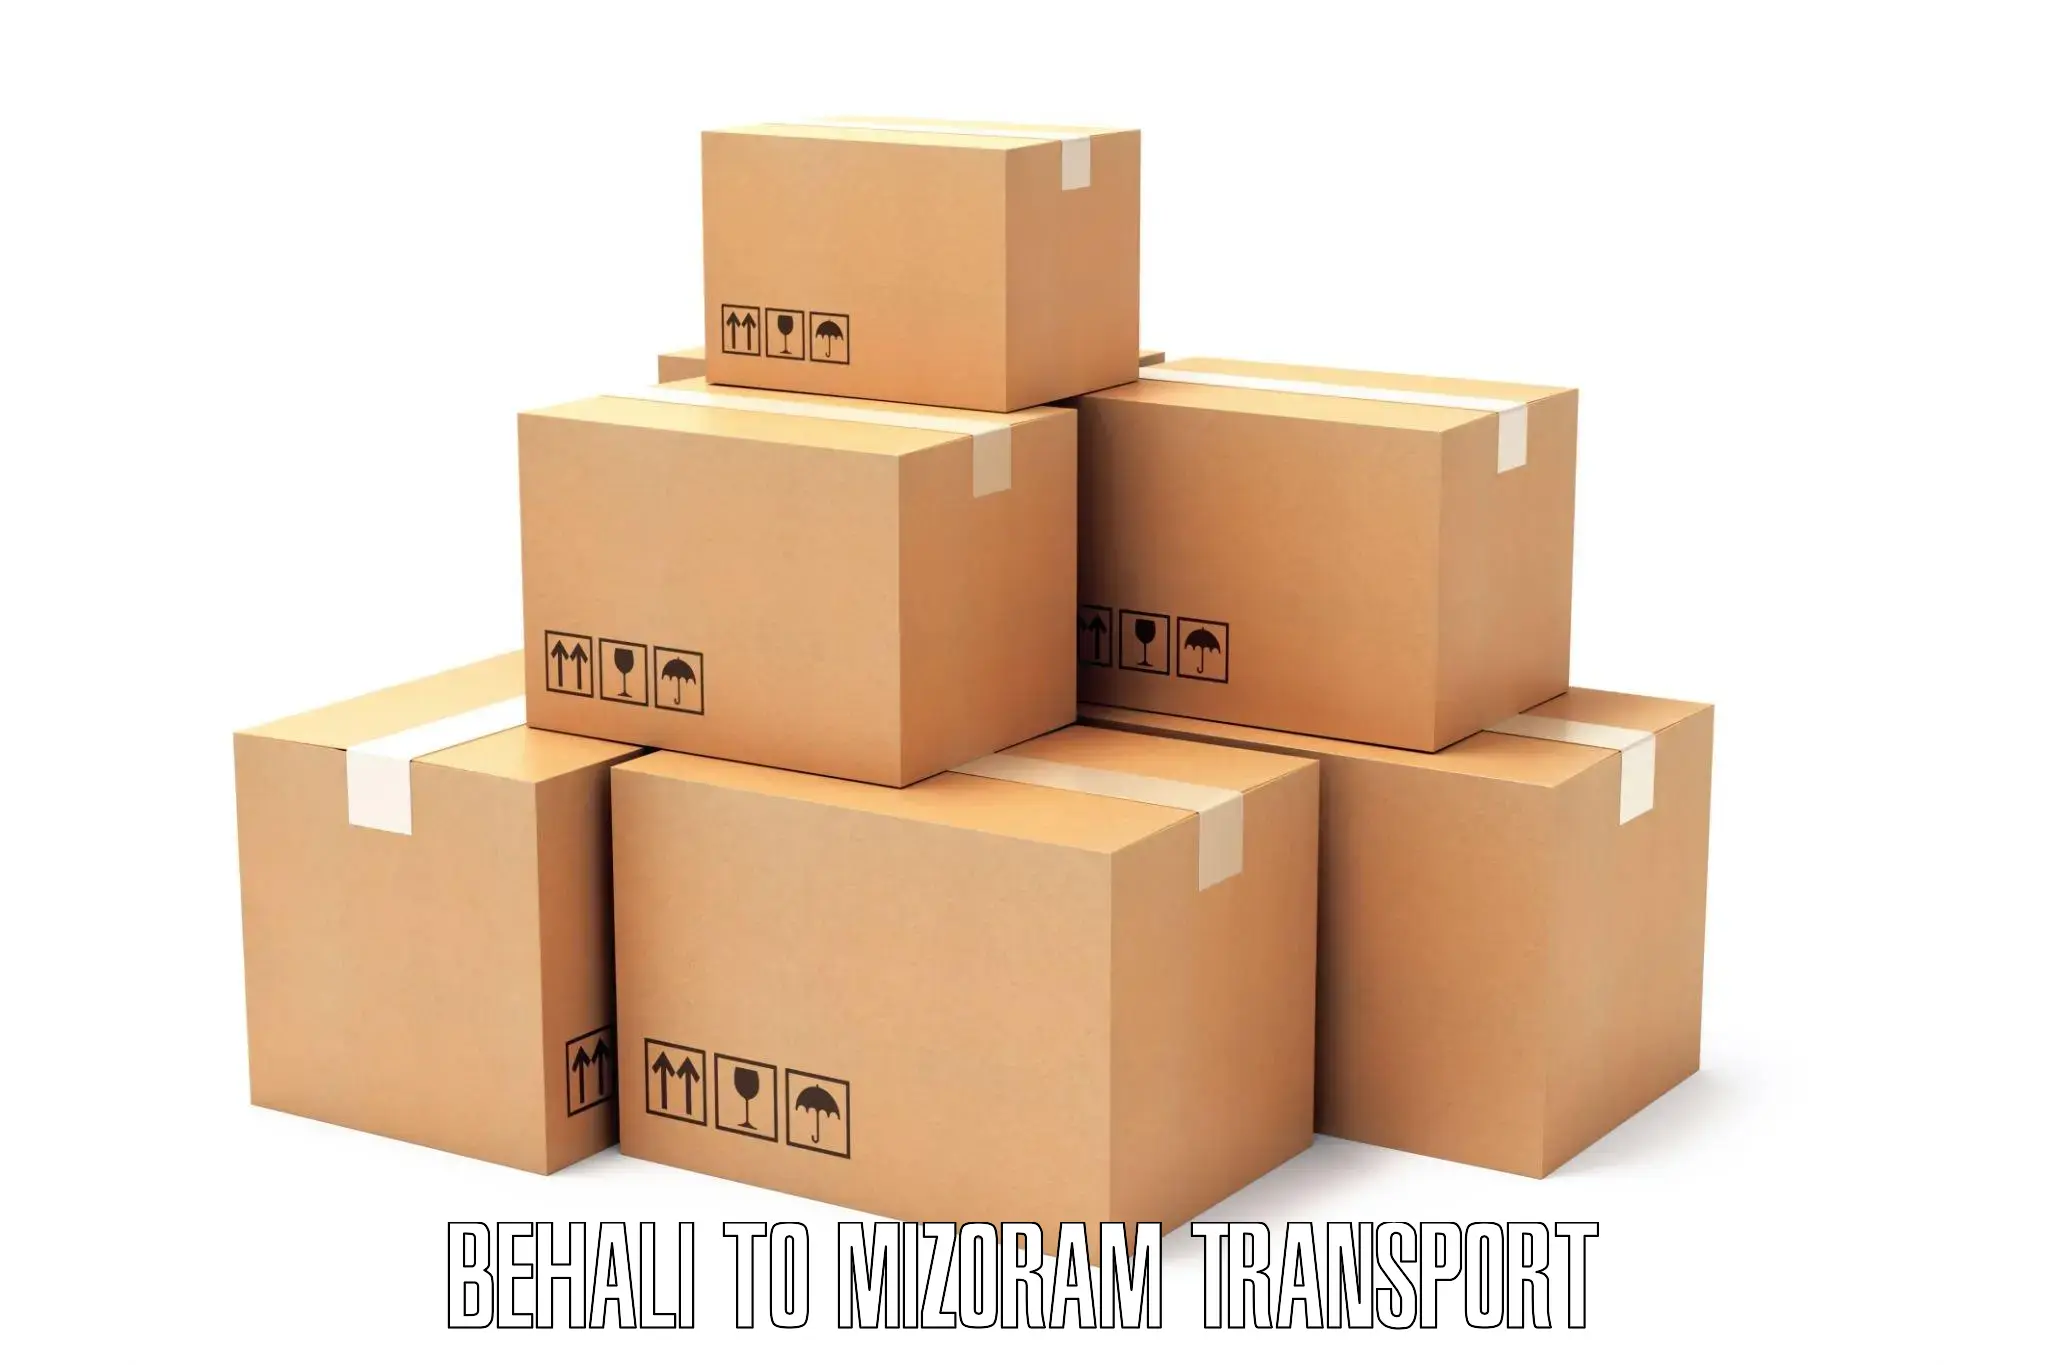 Cargo train transport services Behali to Mamit